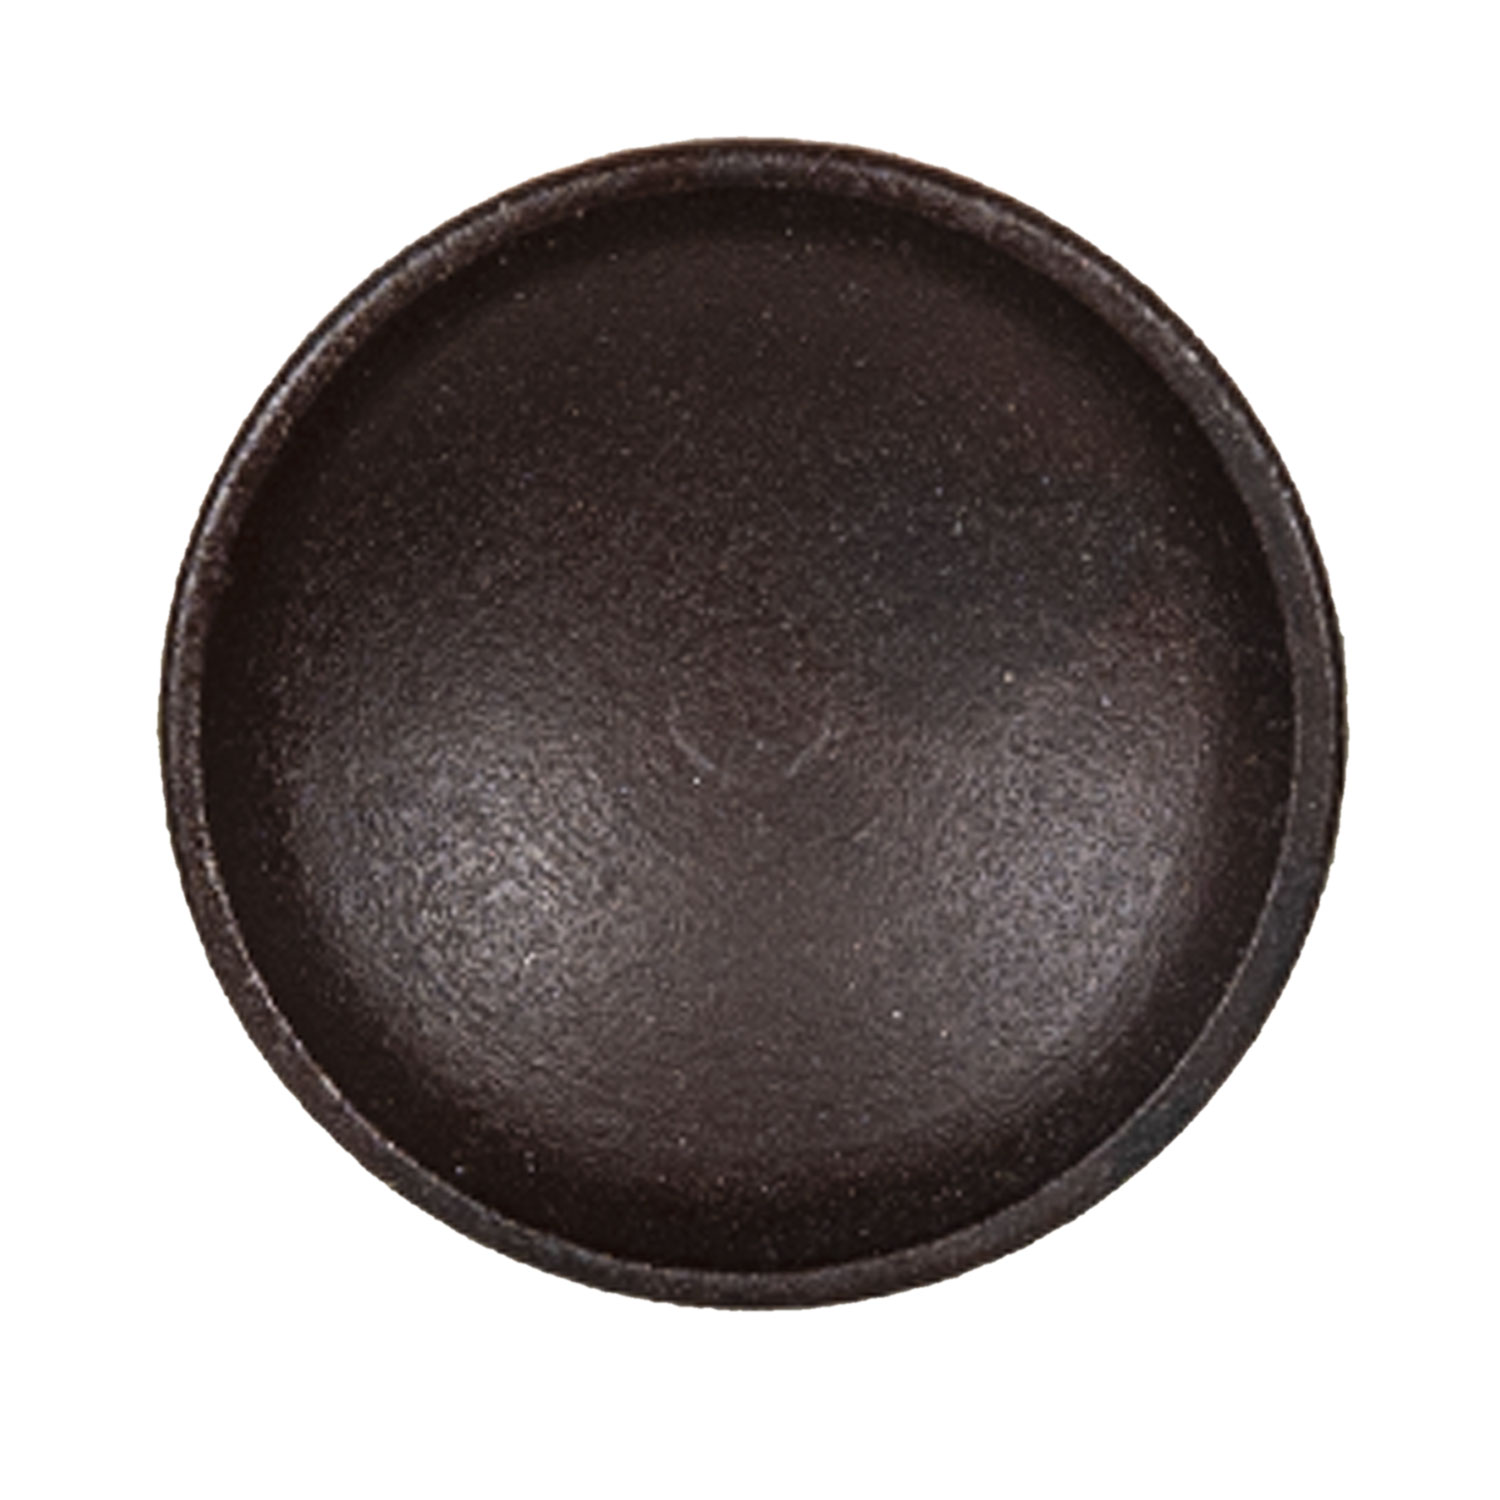 Stoere donker bruine deurknop met zwart van Goed Gestyled brielle